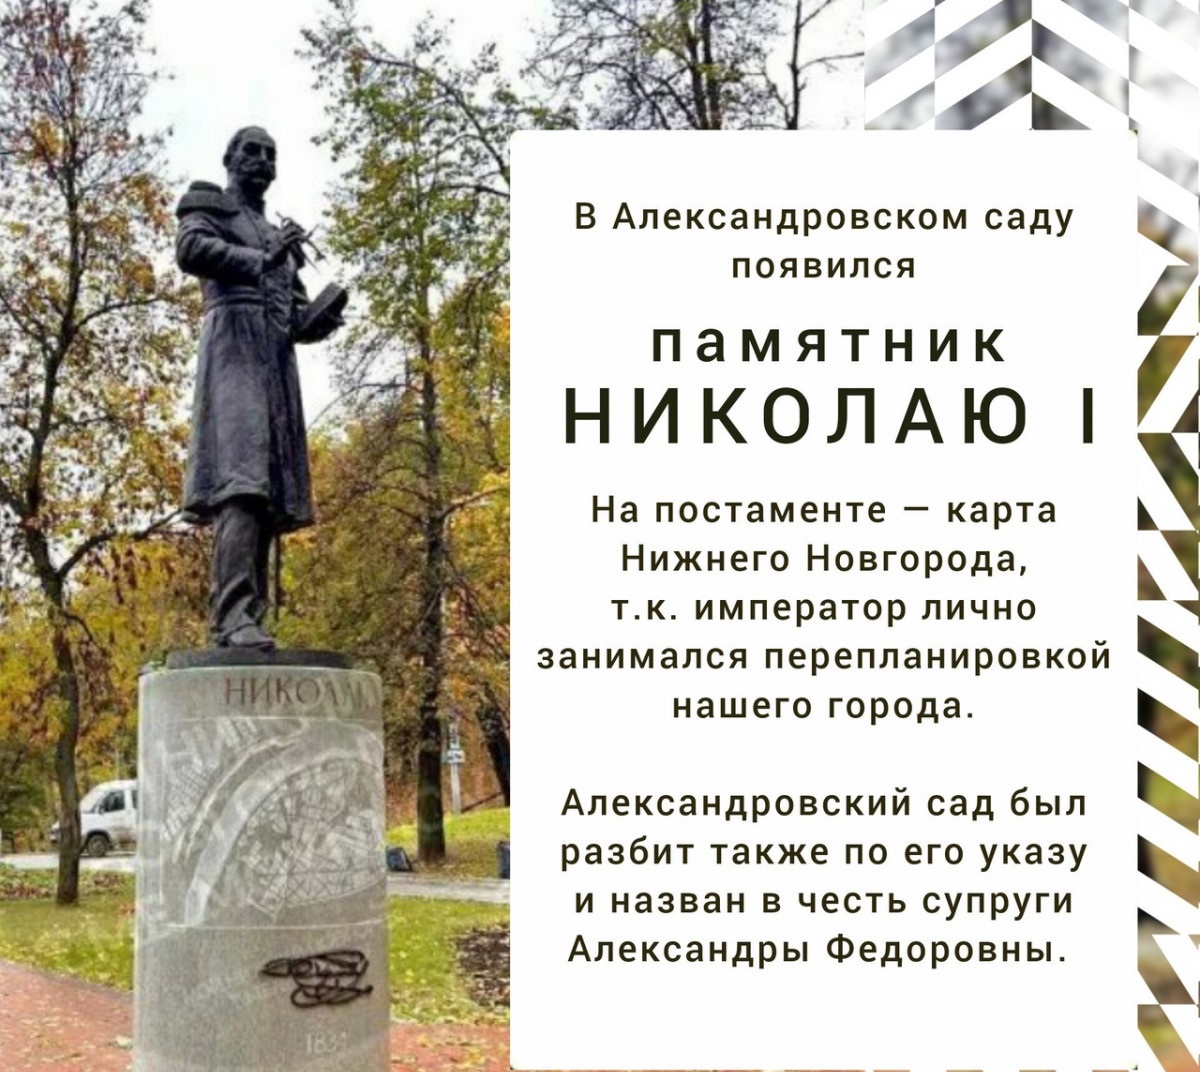 Памятник Николаю I установили в Александровском саду